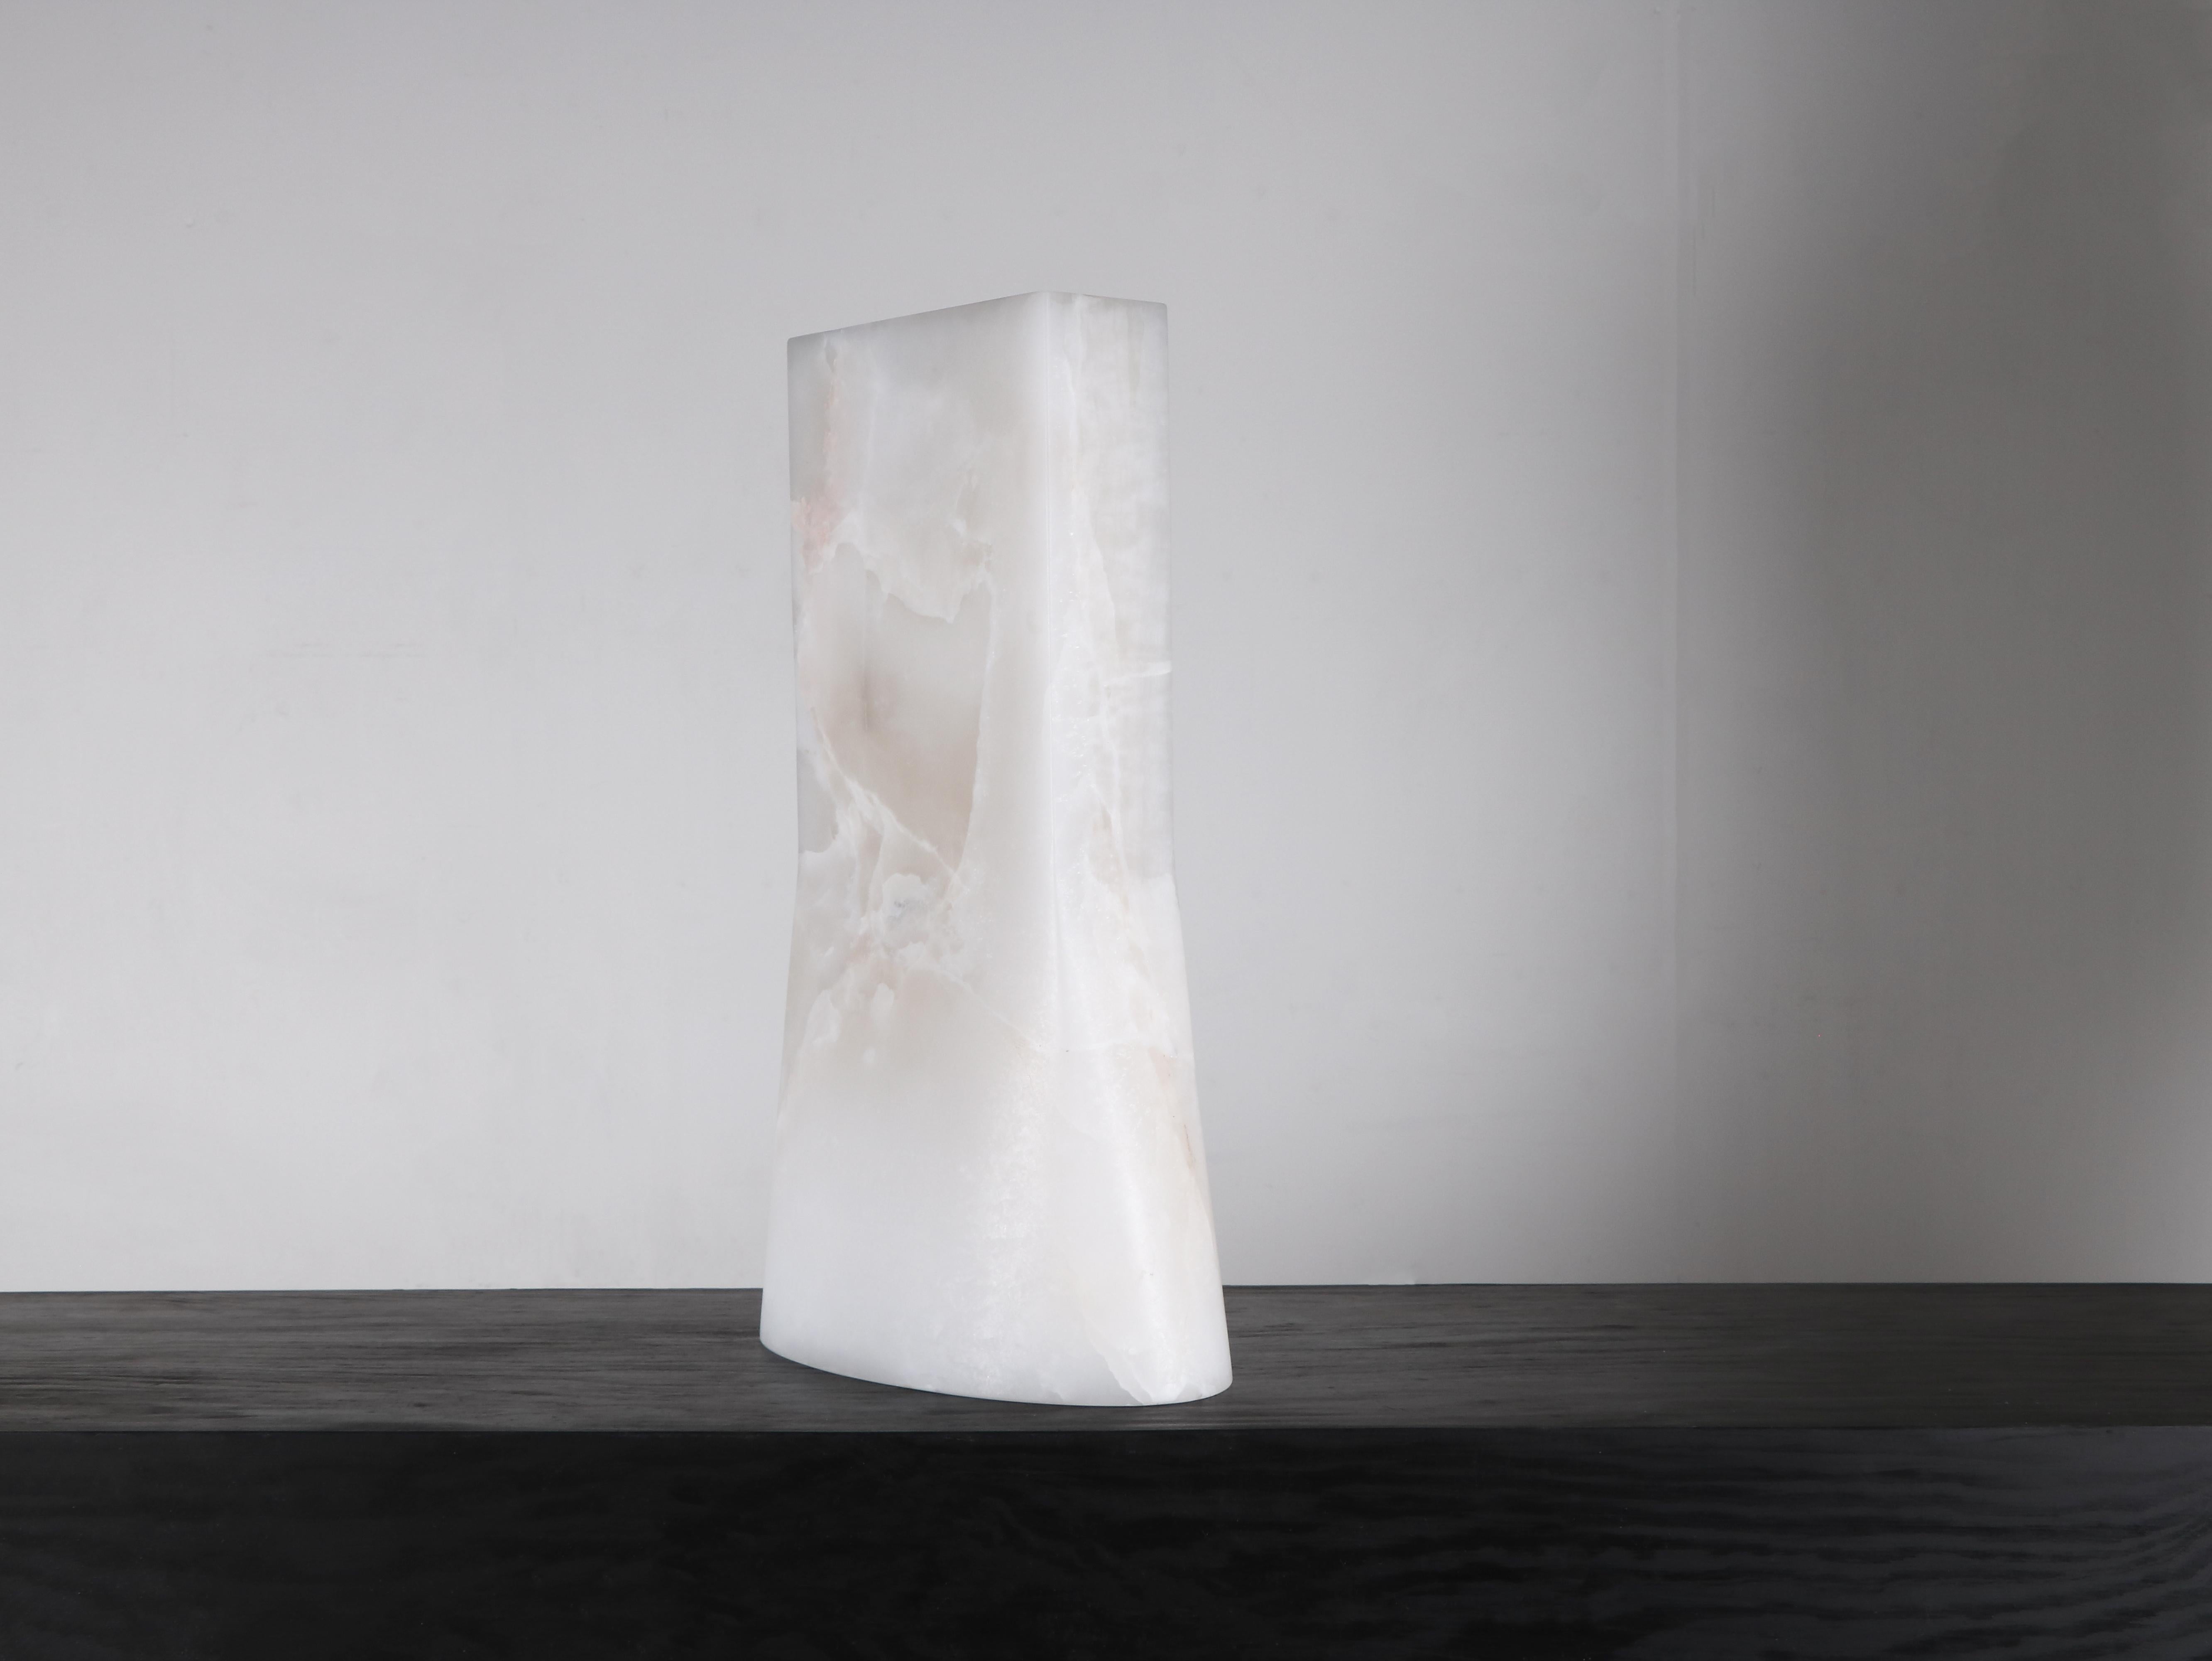 Vase ovale de Lucas Tyra Morten
Edition limitée de 10 + 2 AP
Signé
Dimensions : D 16 x L 30 x H 50 cm.
Matériau : Onyx

Les objets sont accompagnés d'un 